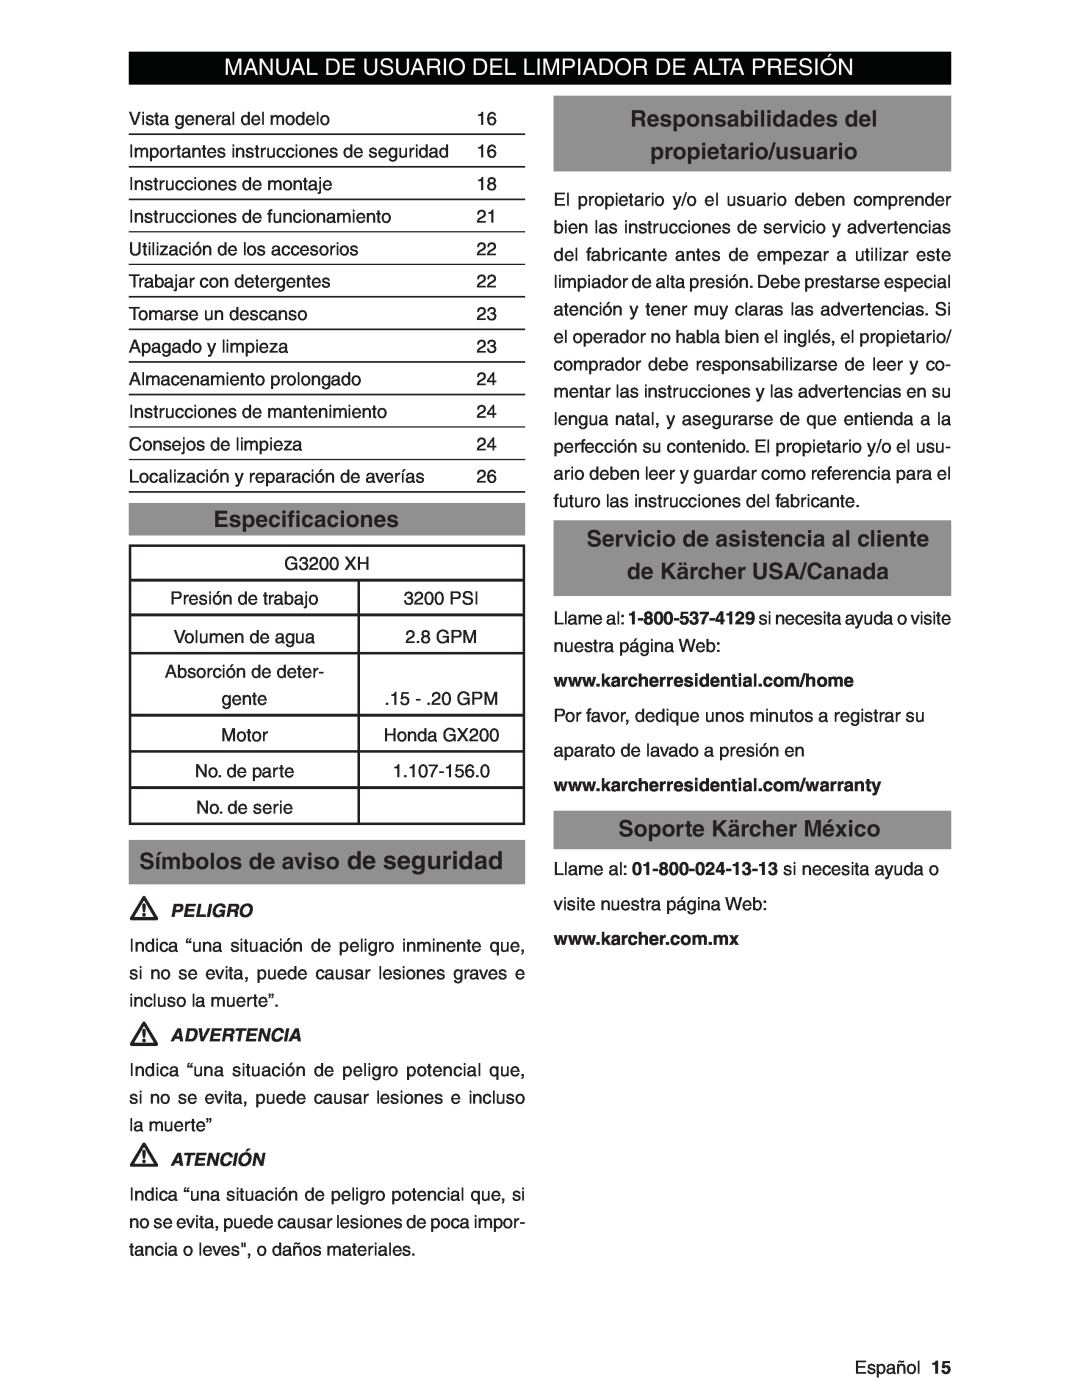 Karcher G3200XH Manual De Usuario Del Limpiador De Alta Presión, Especiﬁcaciones, Símbolos de aviso de seguridad, Peligro 